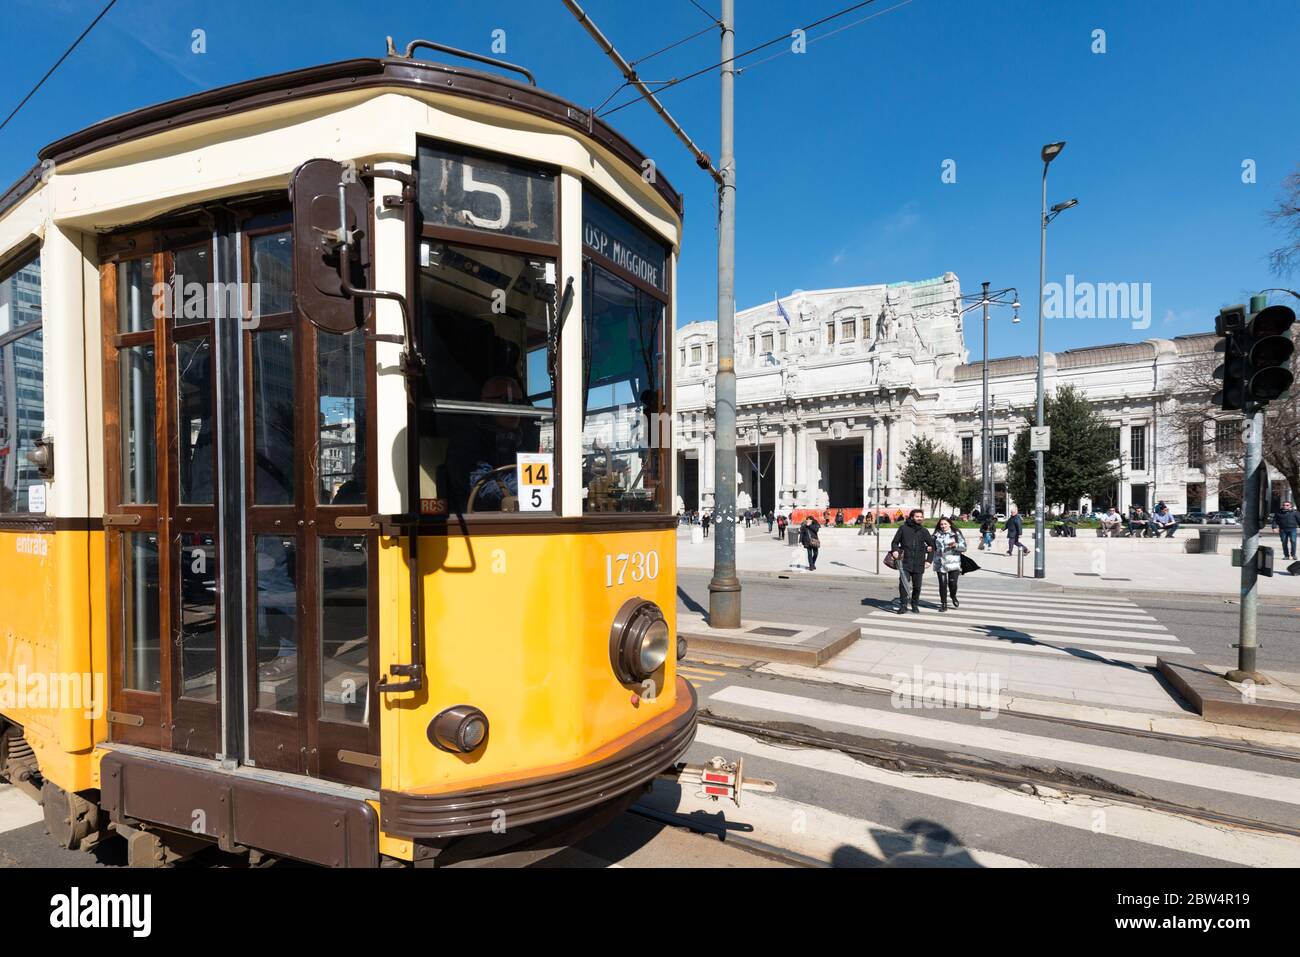 MILÁN, ITALIA - 16, MARZO de 2018: Imagen horizontal del tranvía amarillo frente a la Estación Central de Milán, Italia Foto de stock